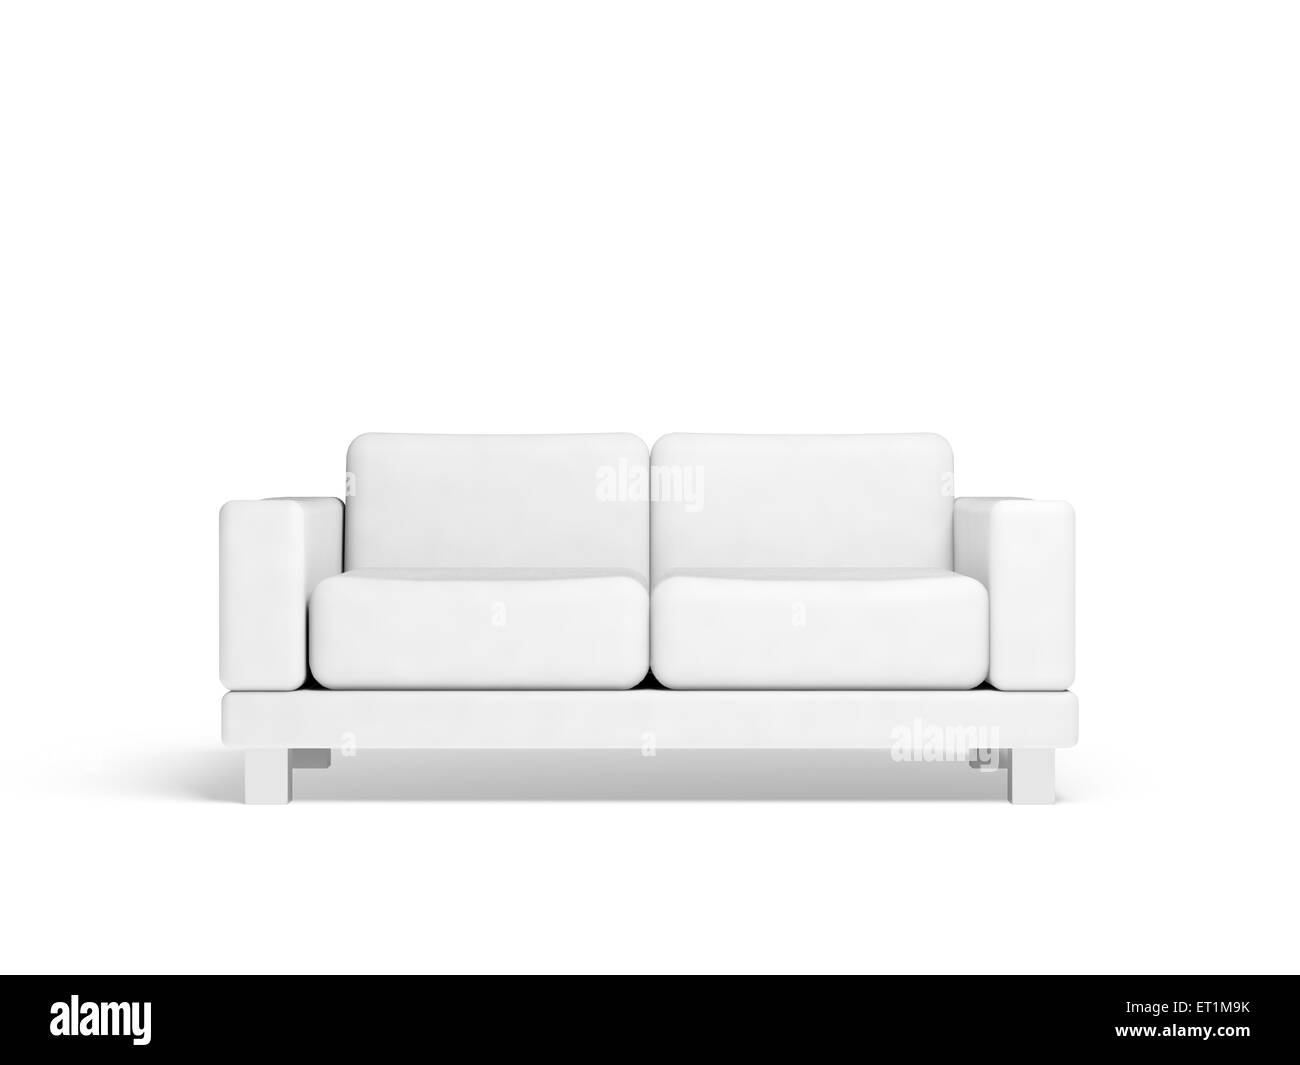 Canapé isolé sur fond blanc intérieur vide, 3d illustration, vue avant Banque D'Images